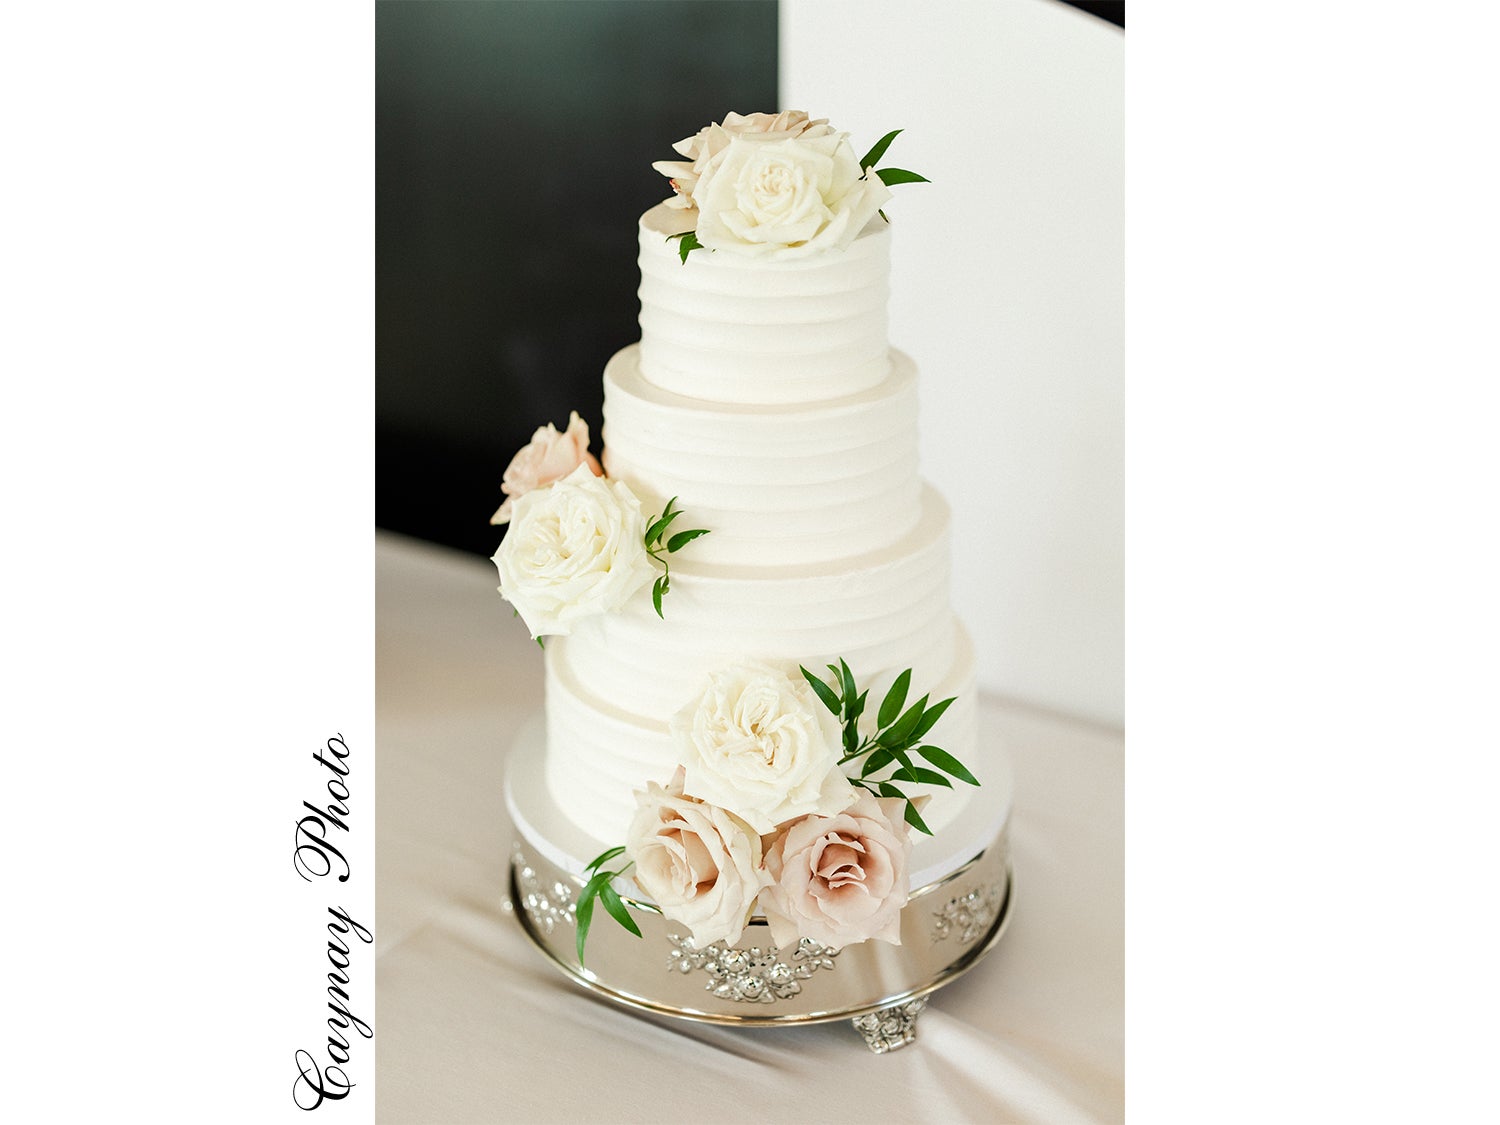 A Wedding Cake on a Plateau · Free Stock Photo